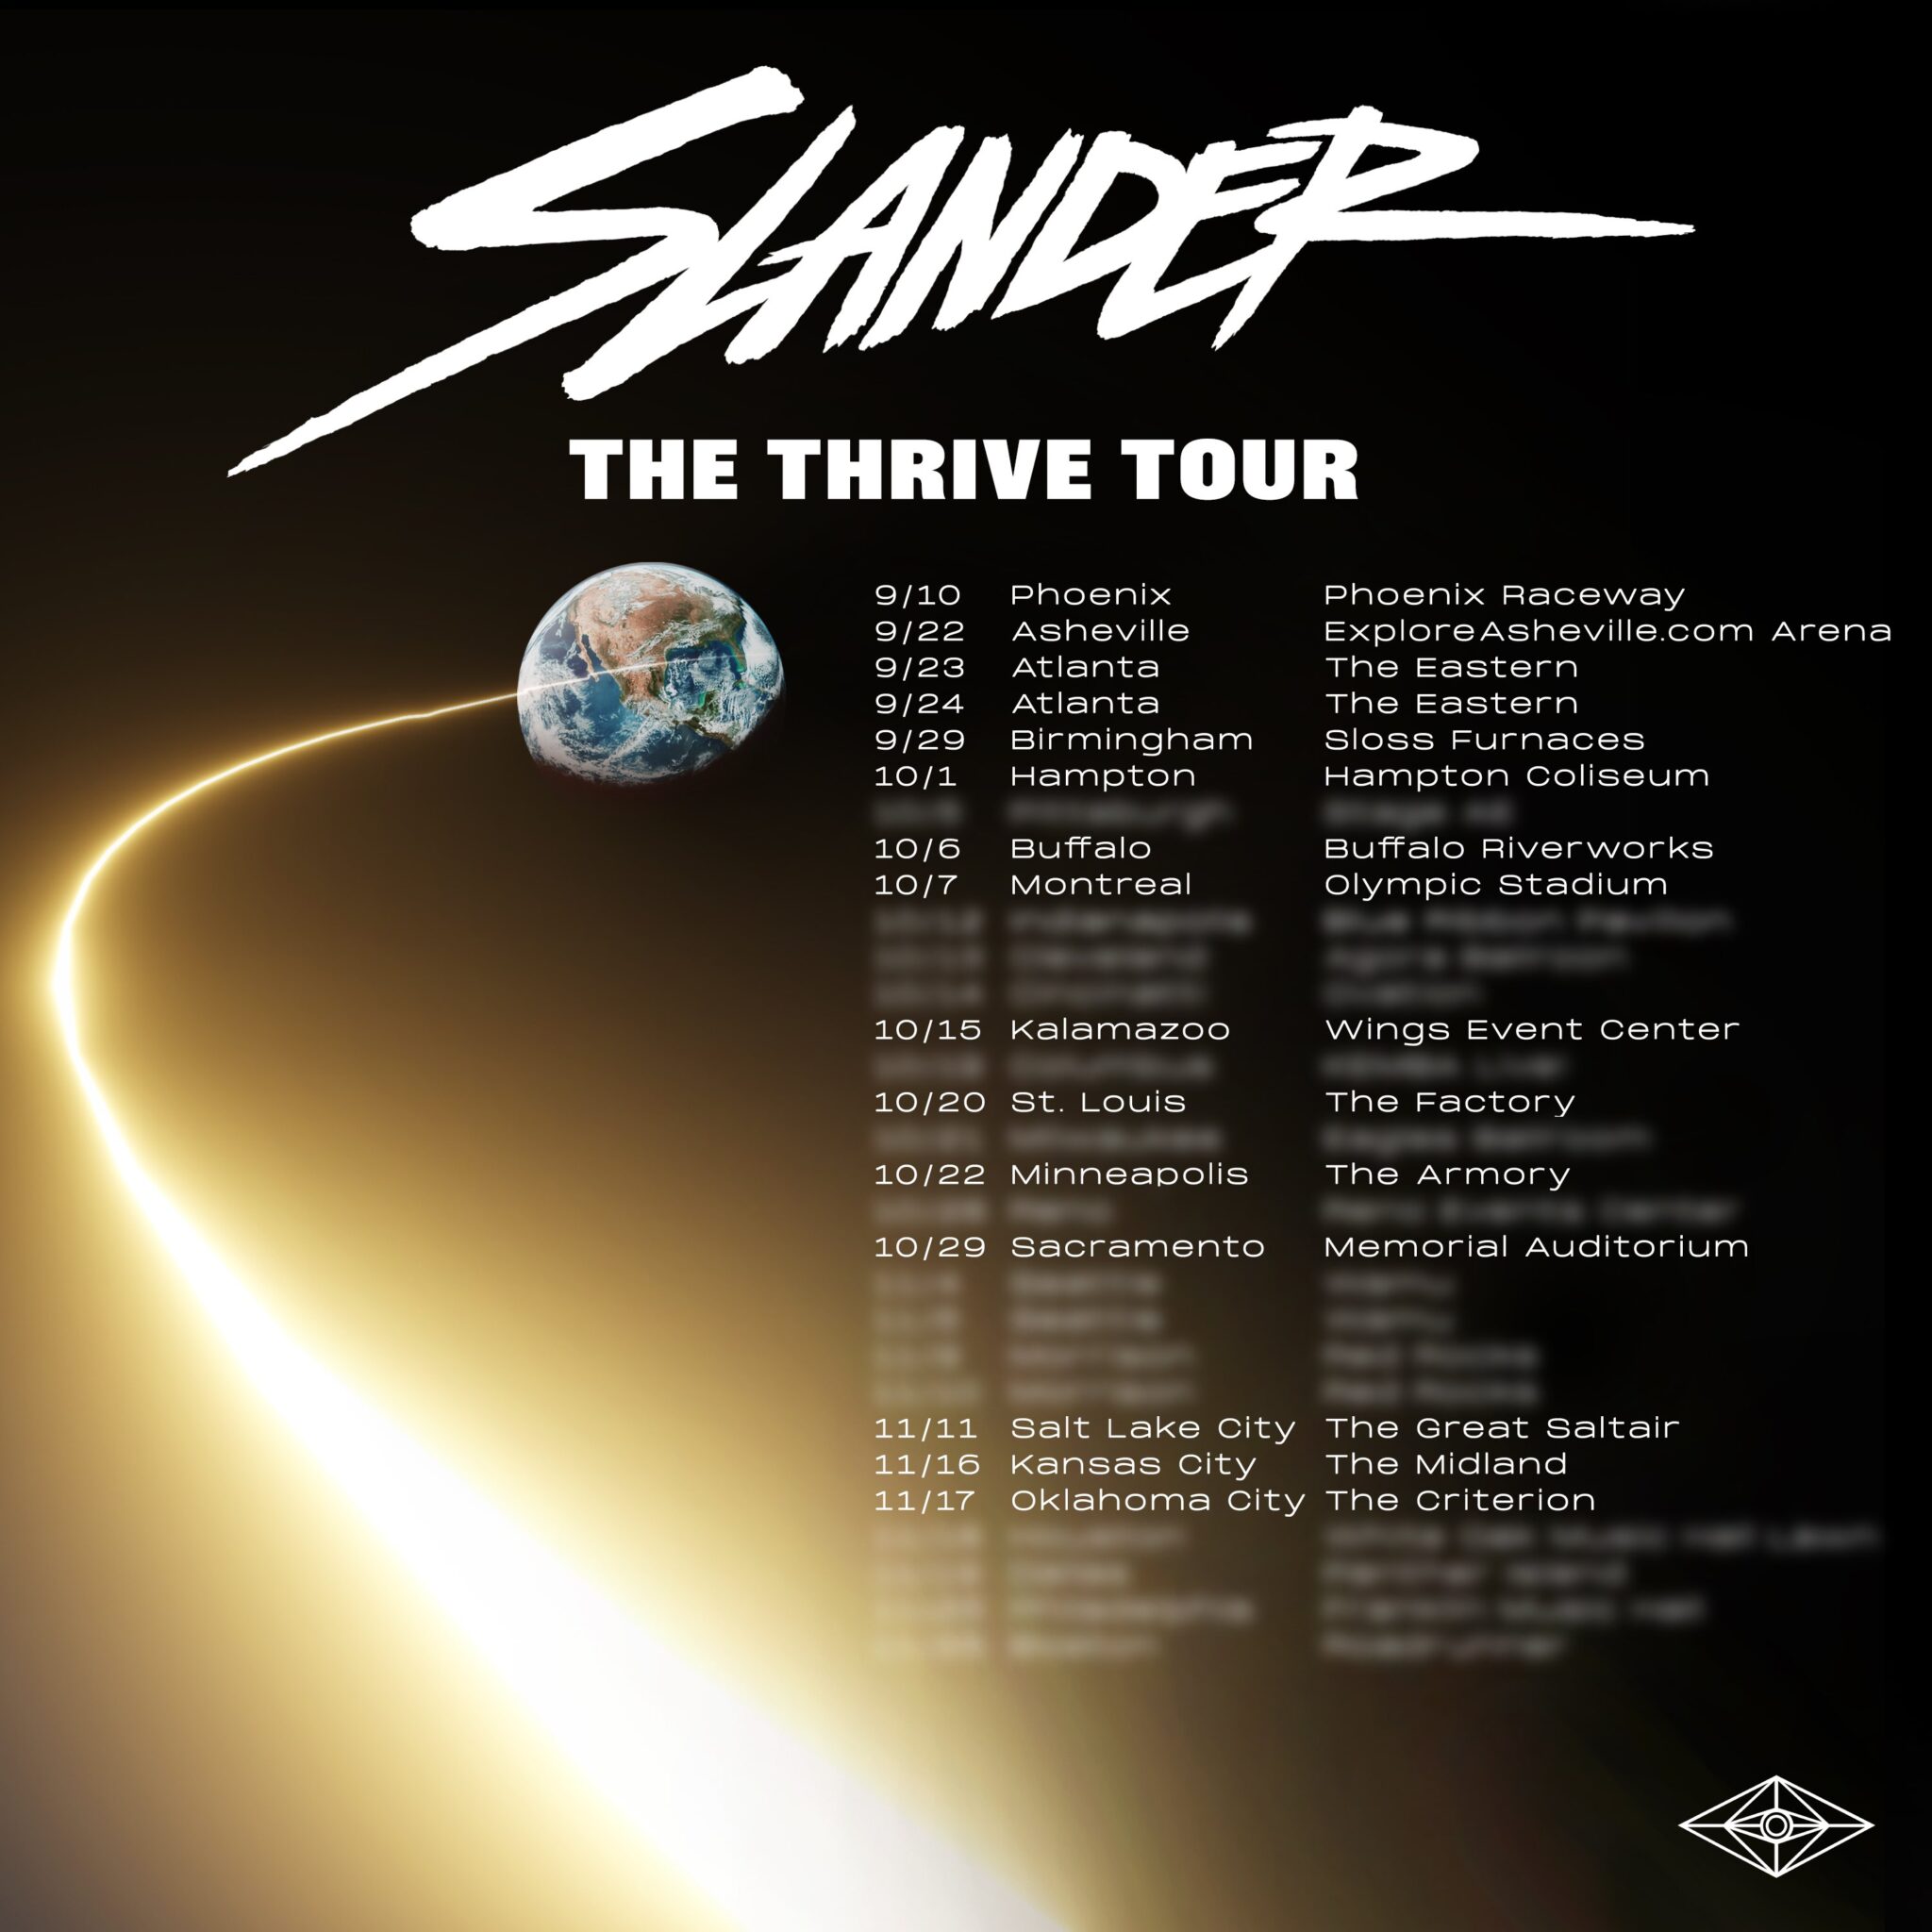 slander tour schedule